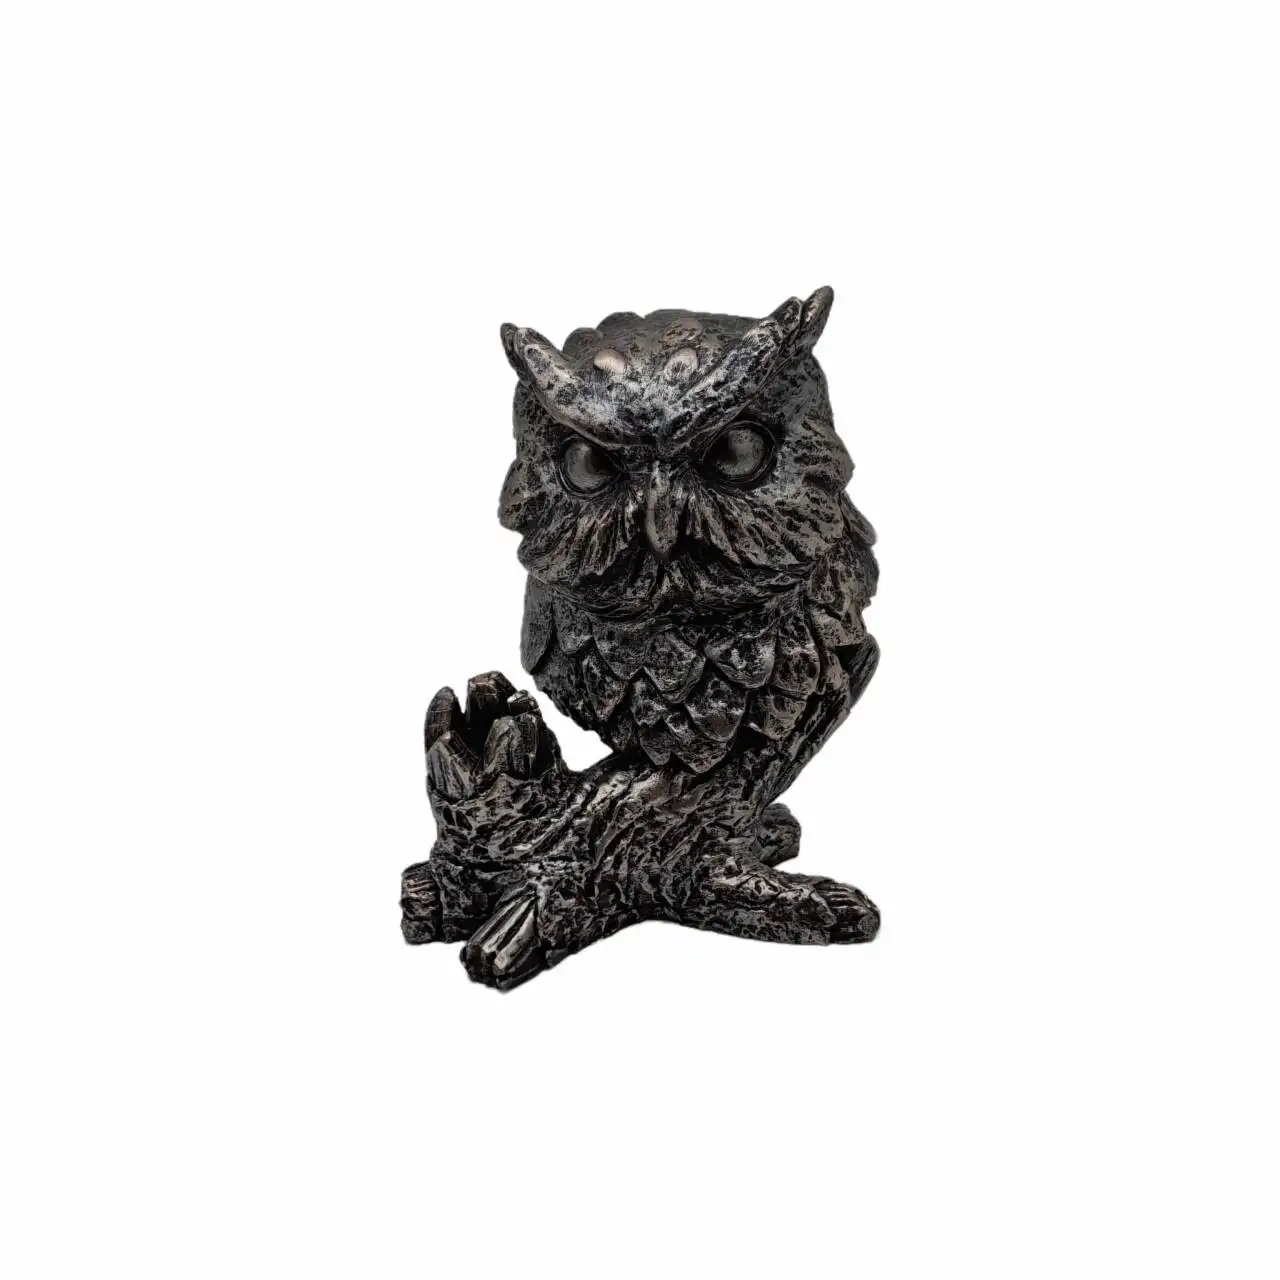 Creative Animal Owl Statue Retro black and gold Owl statue Unique home decor